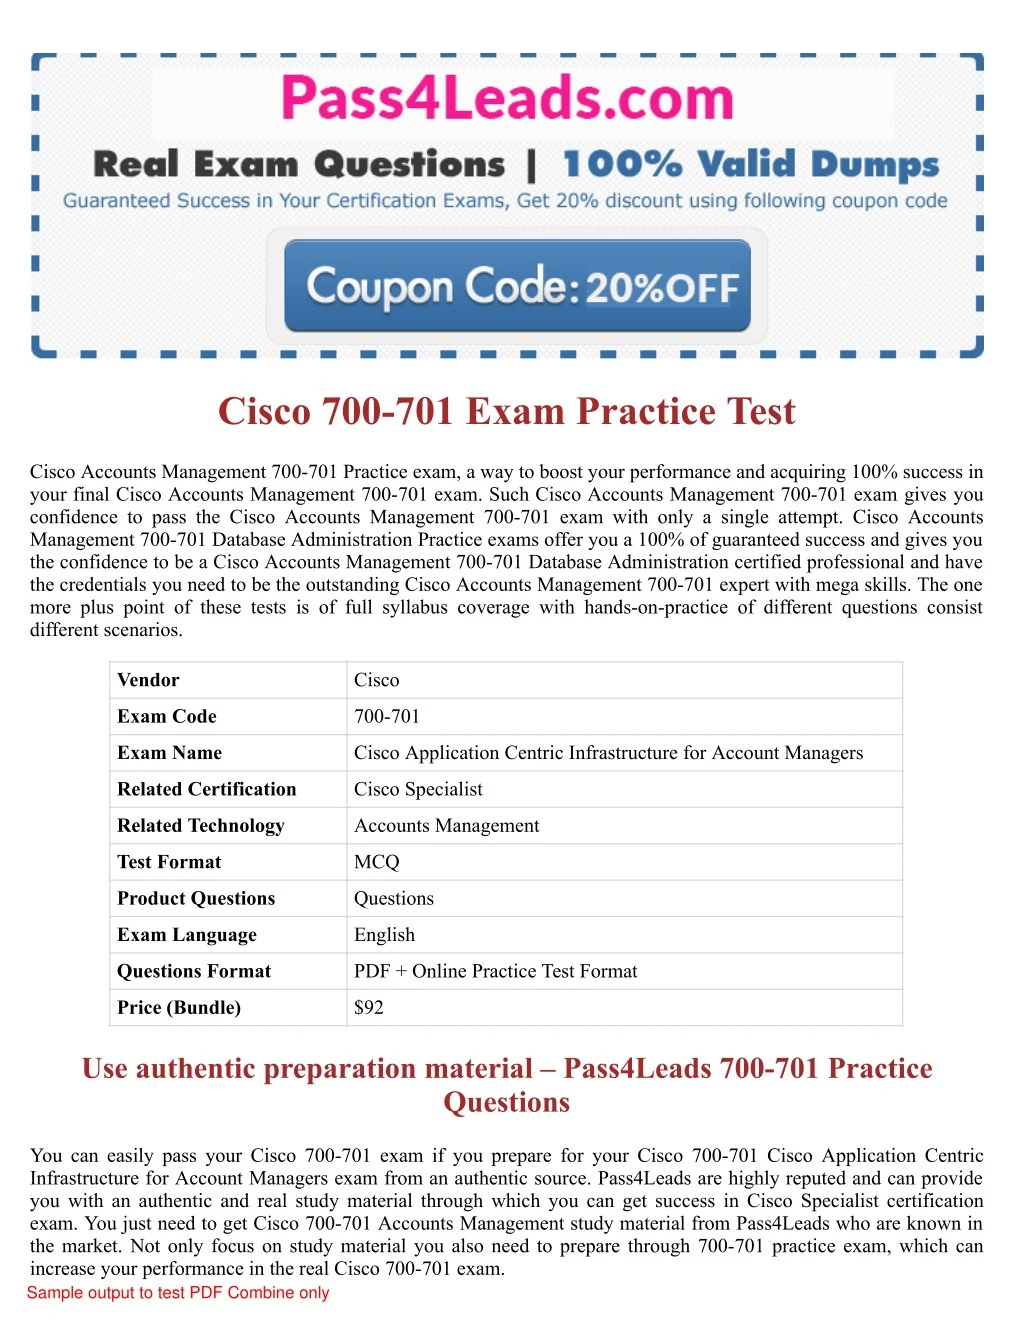 cisco 700 701 exam practice test